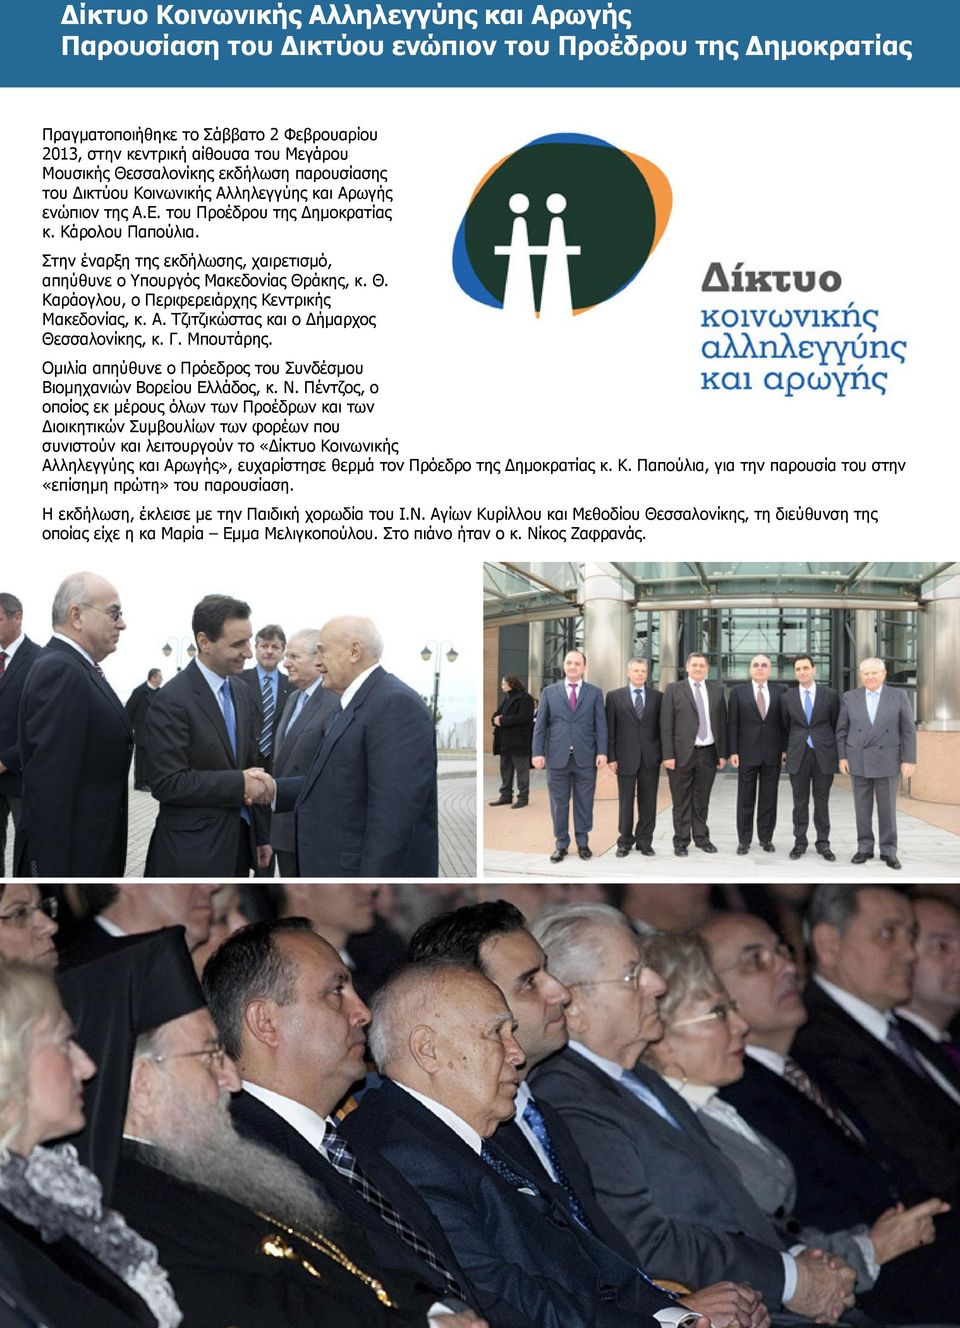 Στην έναρξη της εκδήλωσης, χαιρετισµό, απηύθυνε ο Υπουργός Μακεδονίας Θράκης, κ. Θ. Καράογλου, ο Περιφερειάρχης Κεντρικής Μακεδονίας, κ. Α. Τζιτζικώστας και ο ήµαρχος Θεσσαλονίκης, κ. Γ. Μπουτάρης.